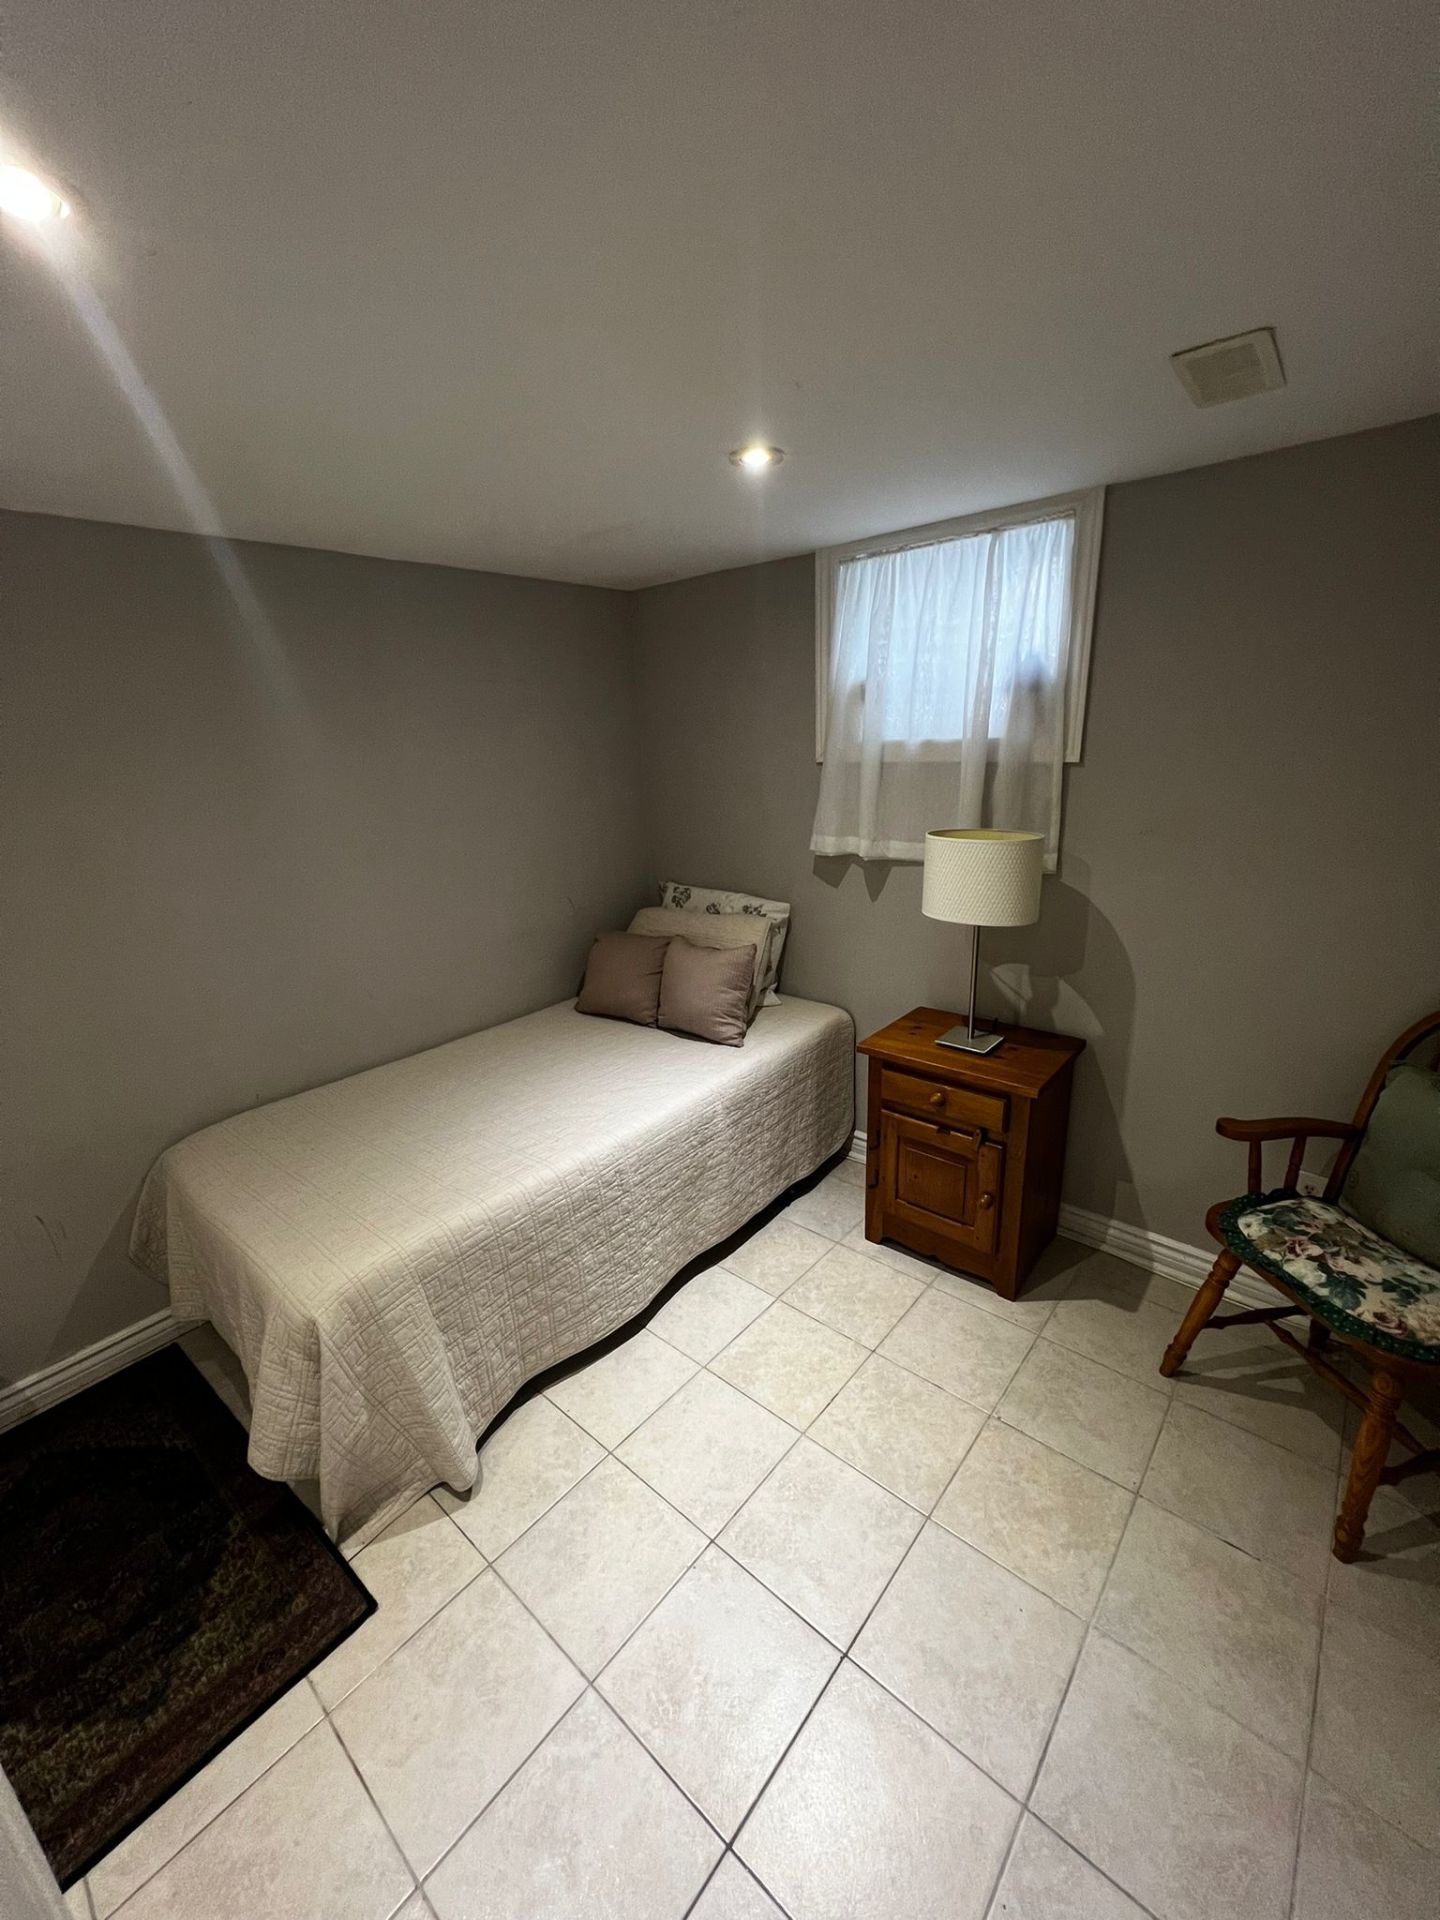 Elite Homestay Room - (Female) room for rent 16